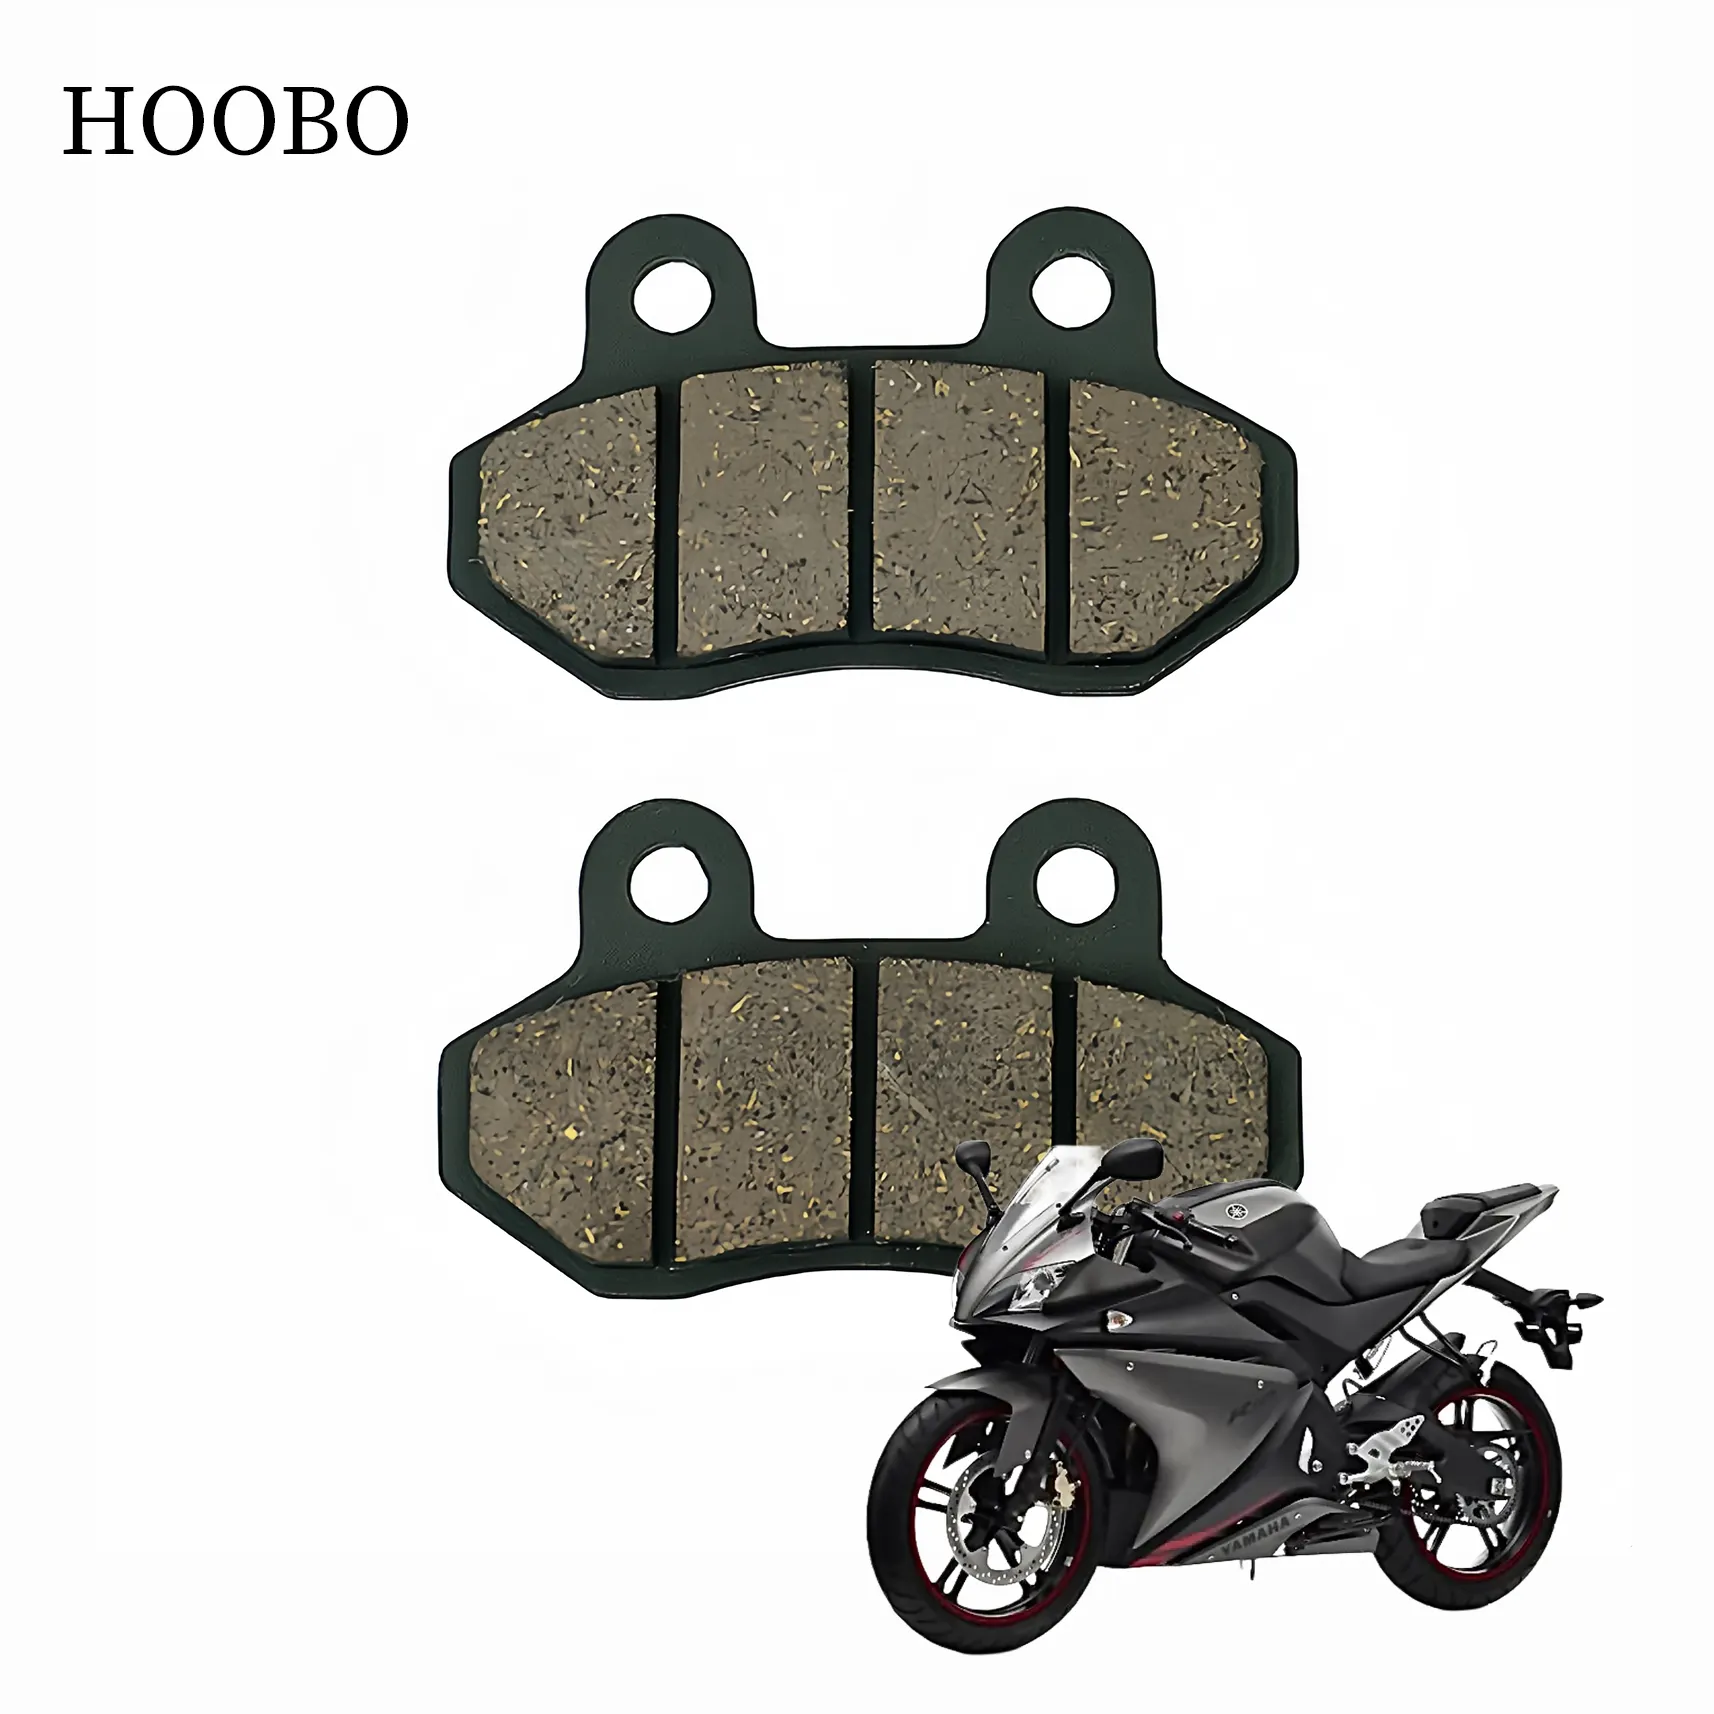 OEM Cina bantalan rem sepeda motor 150cc bantalan rem sepeda motor belakang bantalan rem sepeda motor untuk semua model